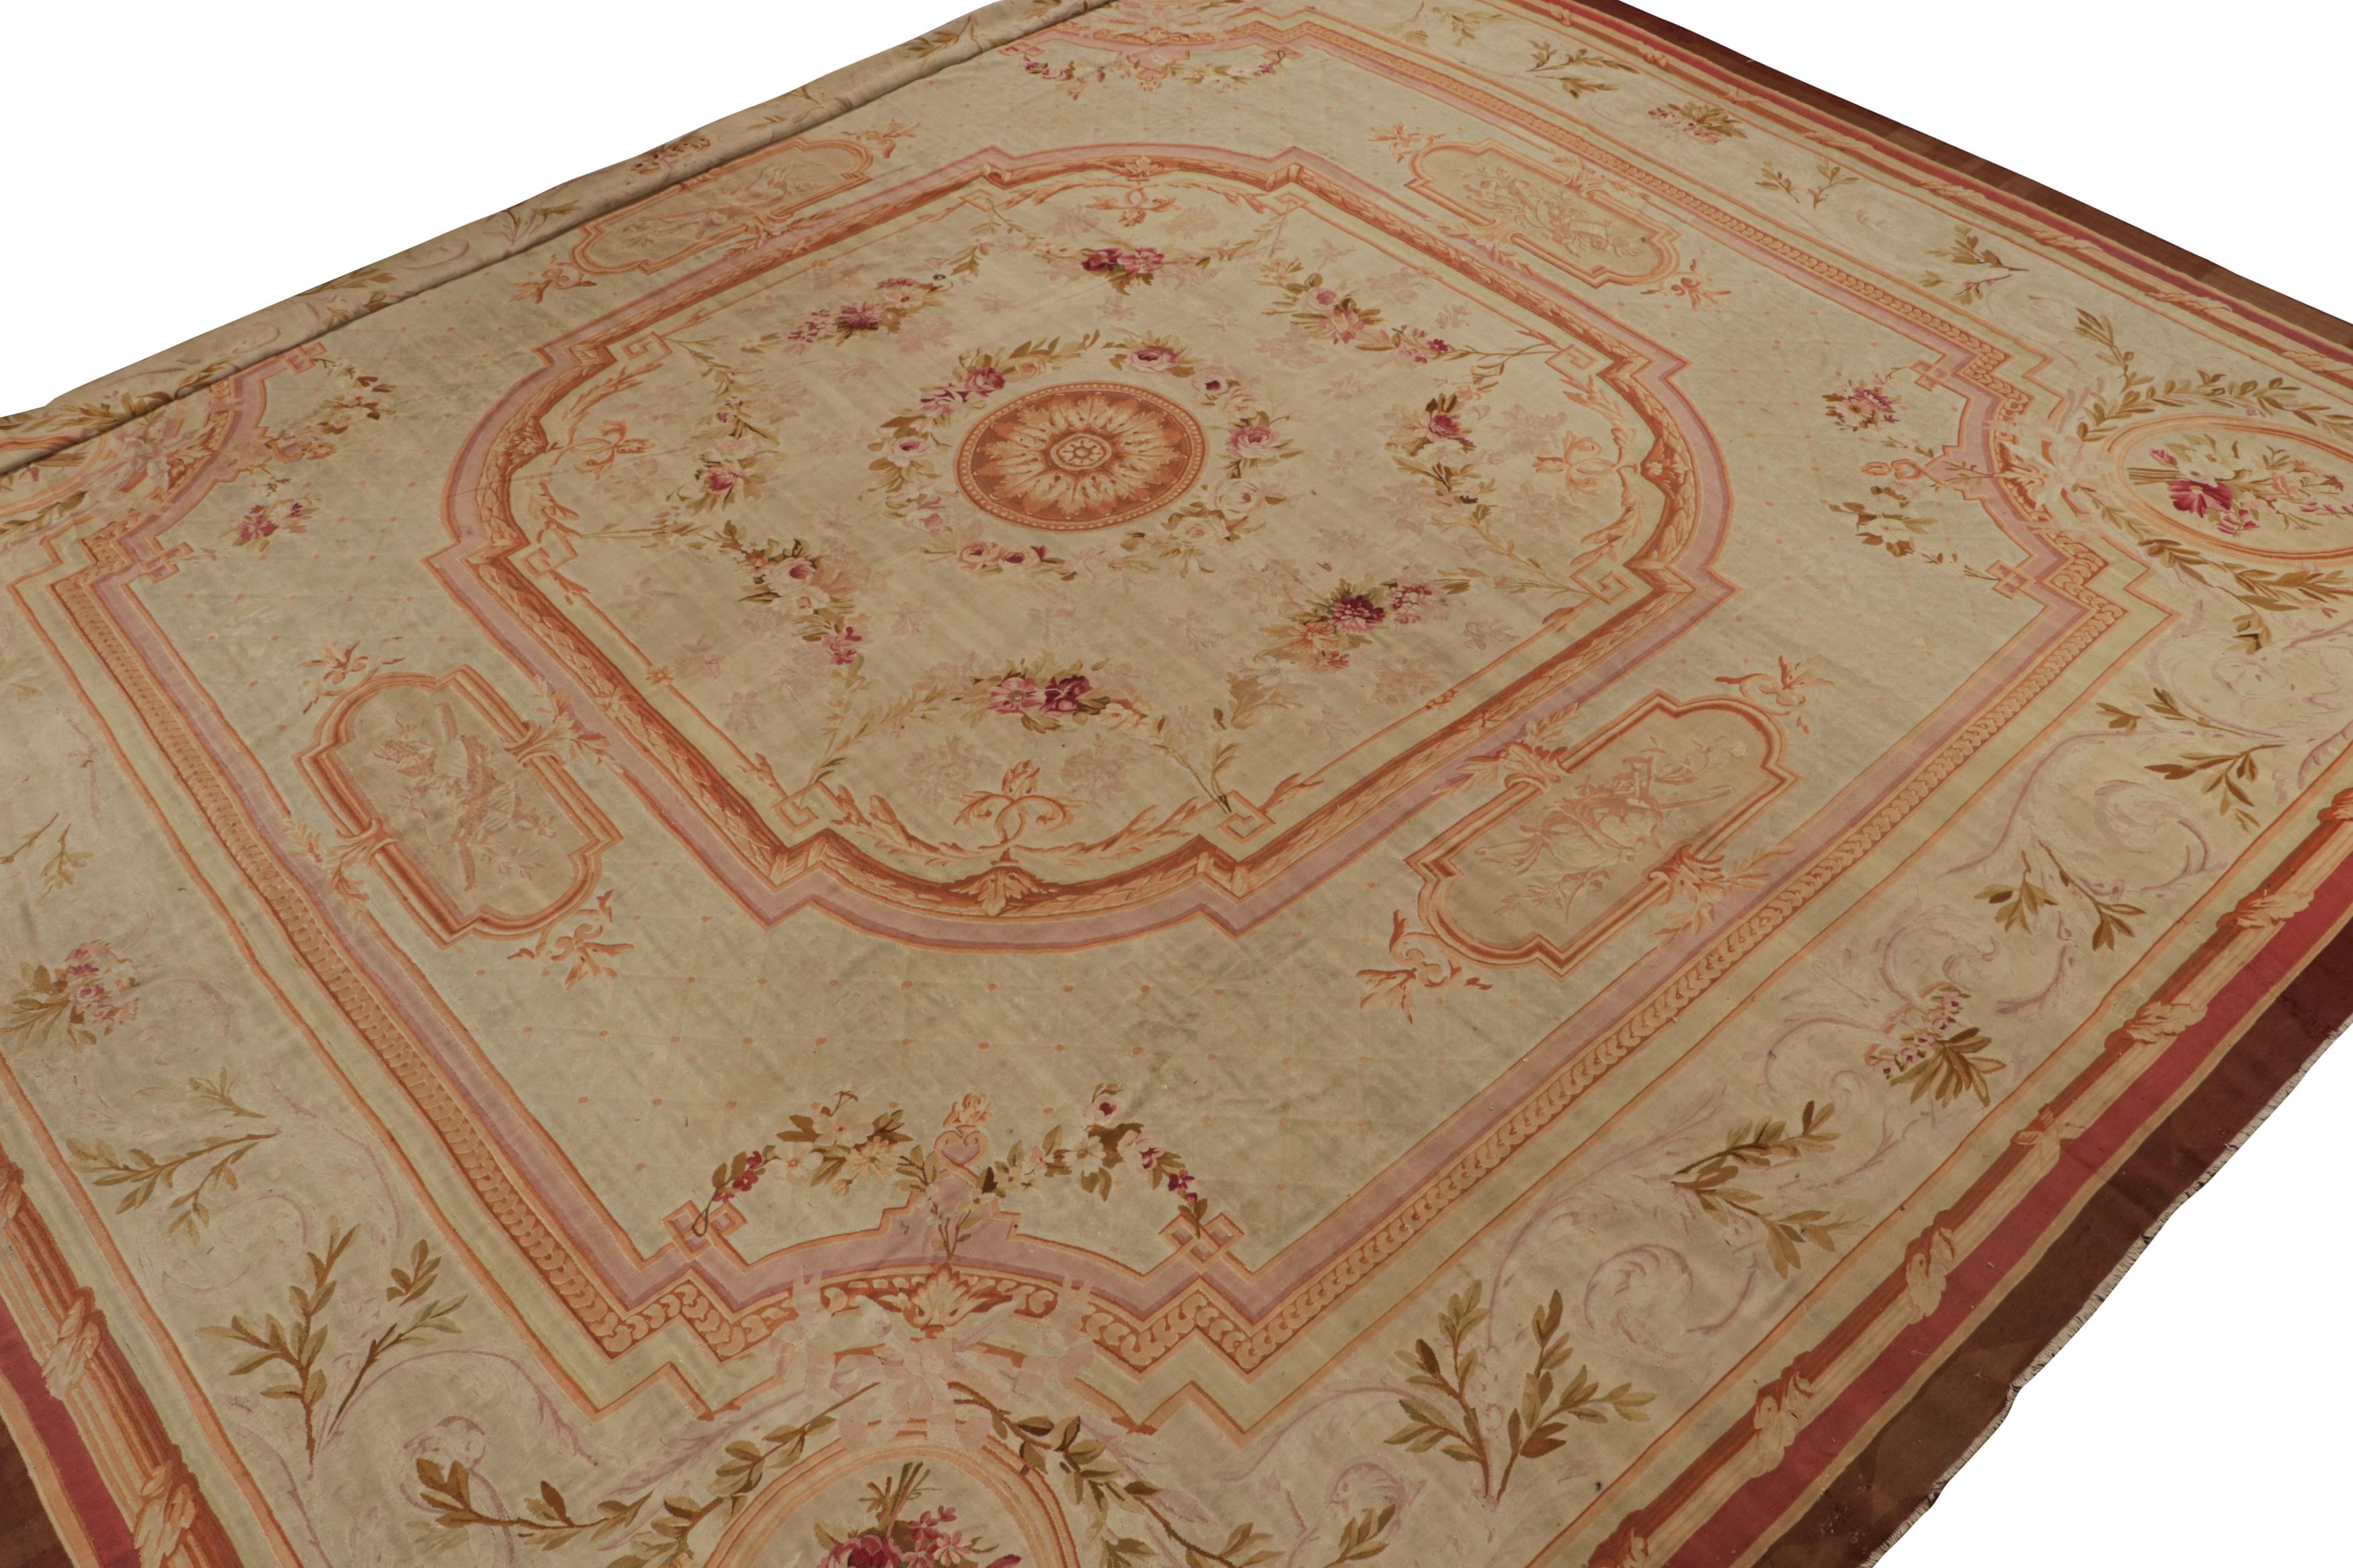 Dieser 17x17 große antike Aubusson-Teppich aus Wolle, handgewebt um 1890-1900, ist ein seltenes Meisterwerk aus der Zeit der Jahrhundertwende. Das Design zeigt reiche rote, rosafarbene und braune architektonische Bordüren um ein cremefarbenes Feld